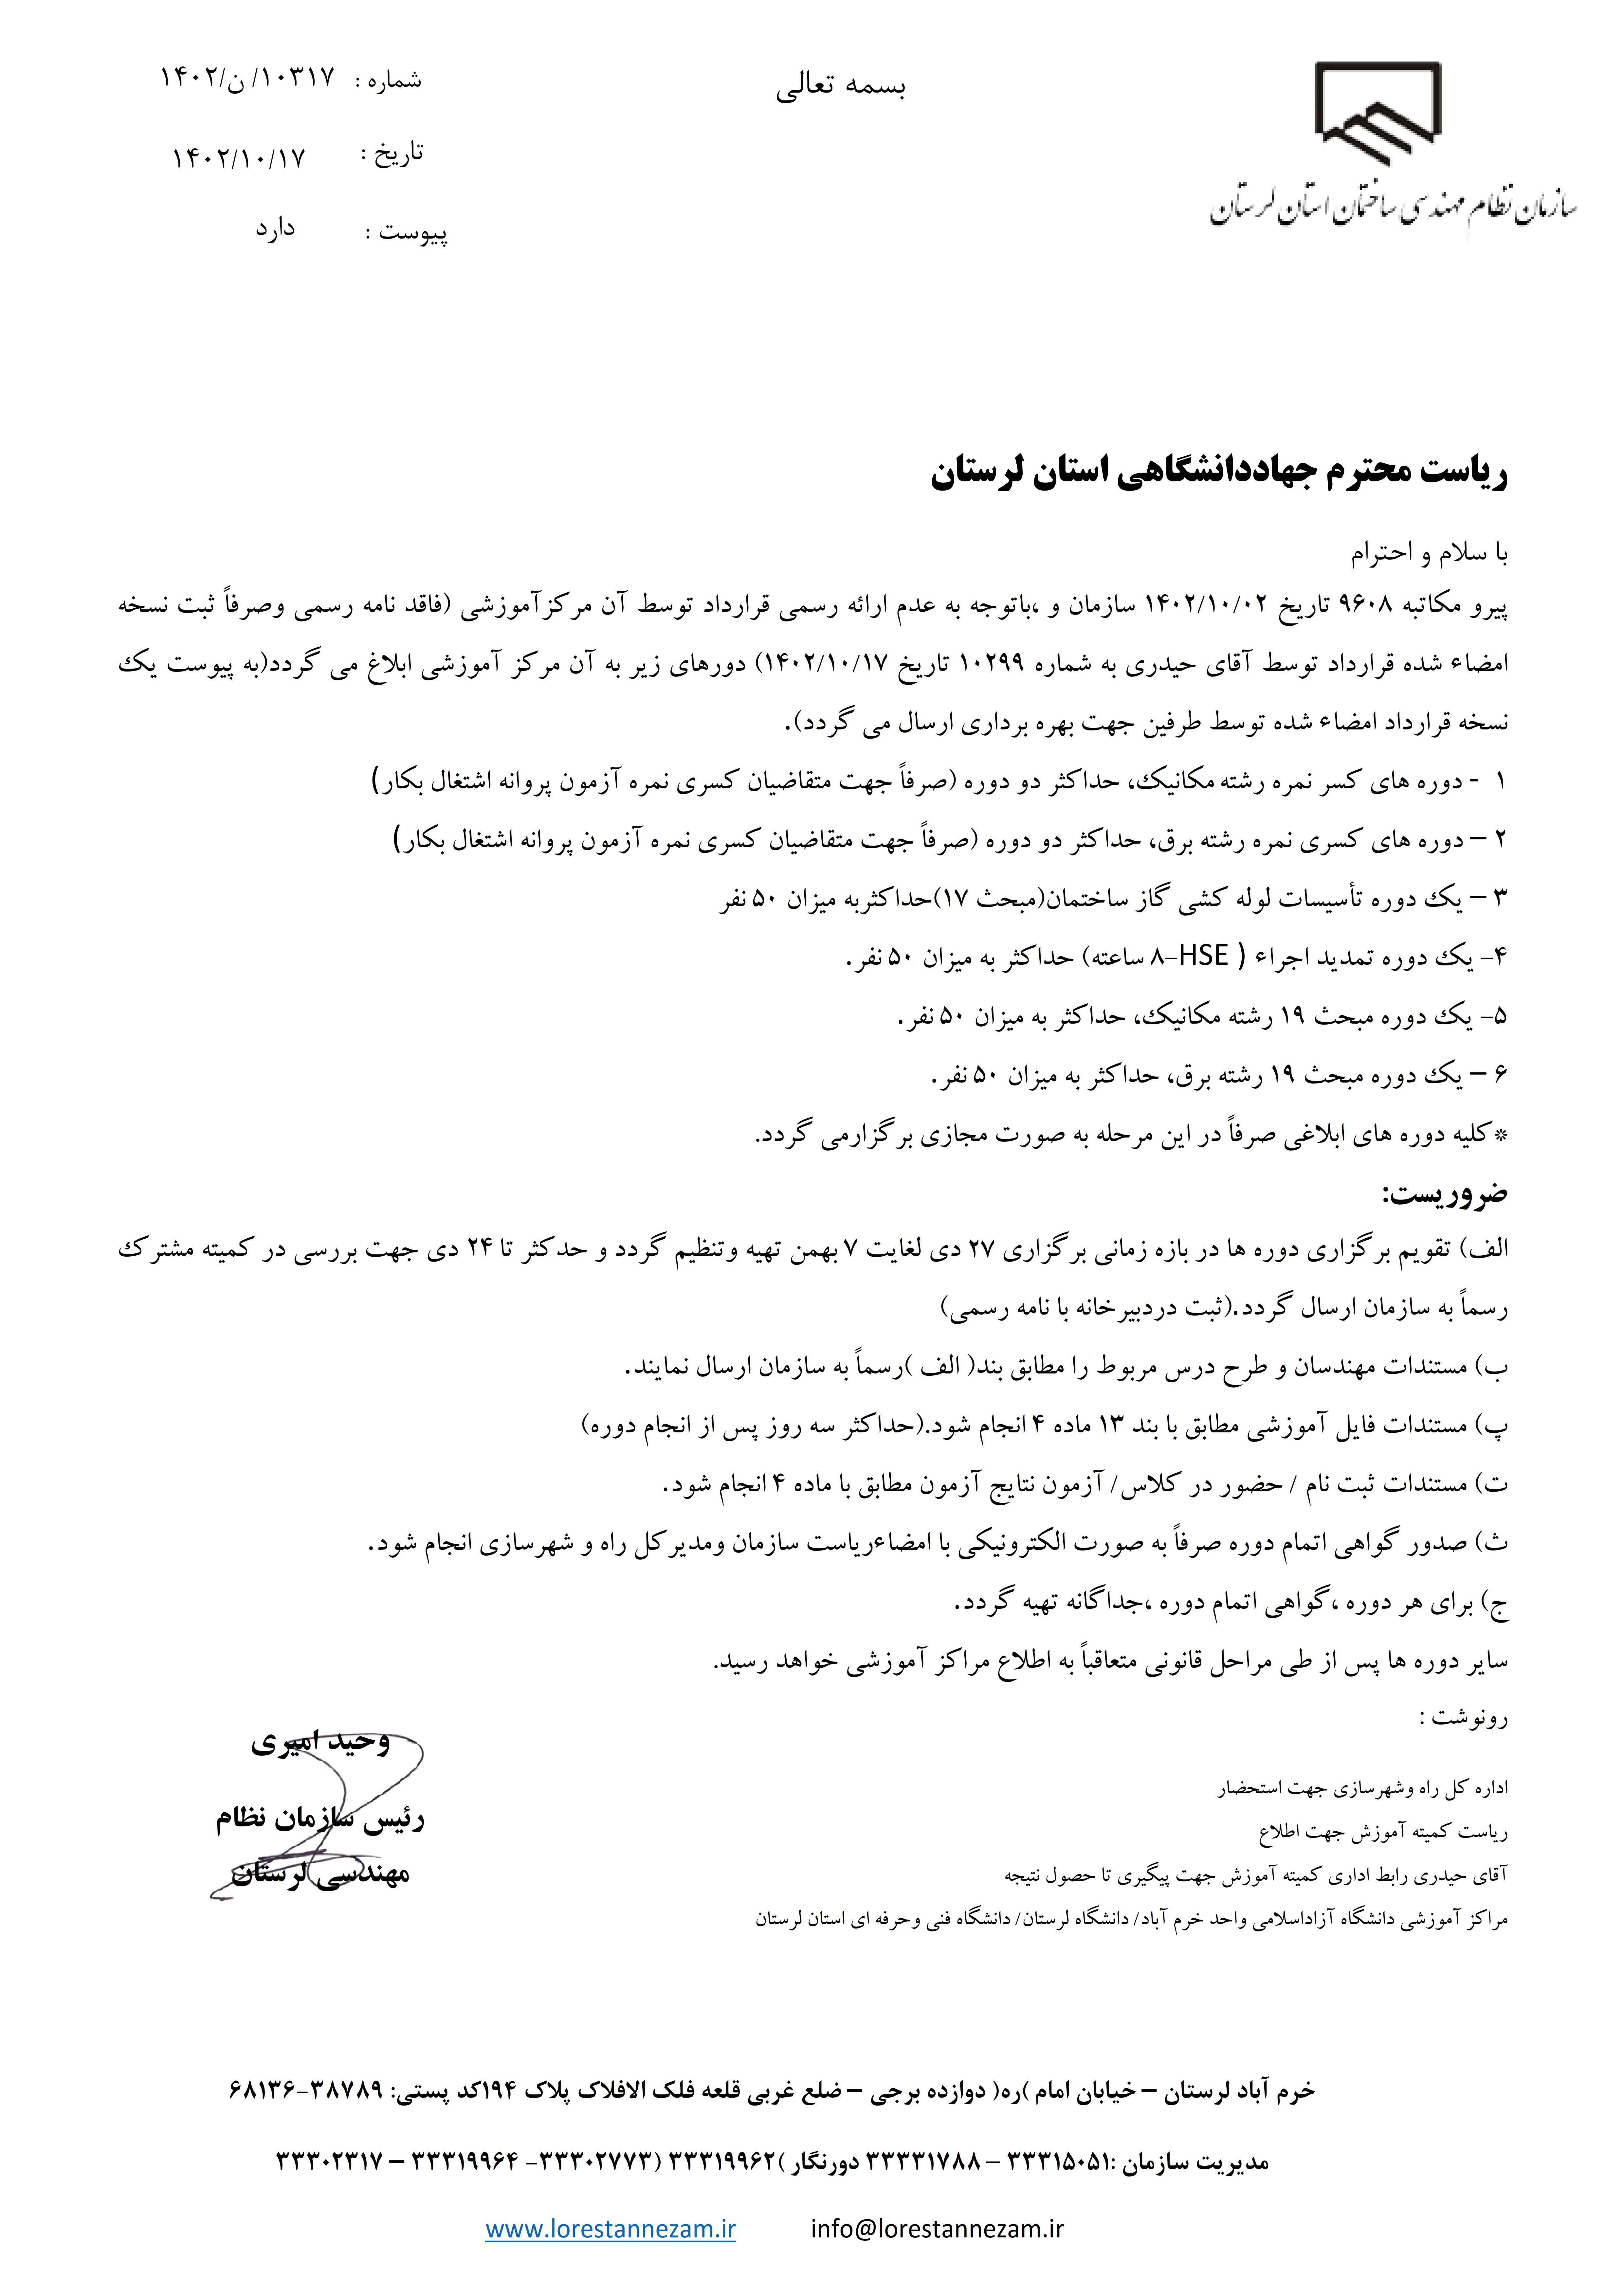 مکاتبه رسمی سازمان استان جهت اعلام دوره های آموزشی به جهاد دانشگاهی